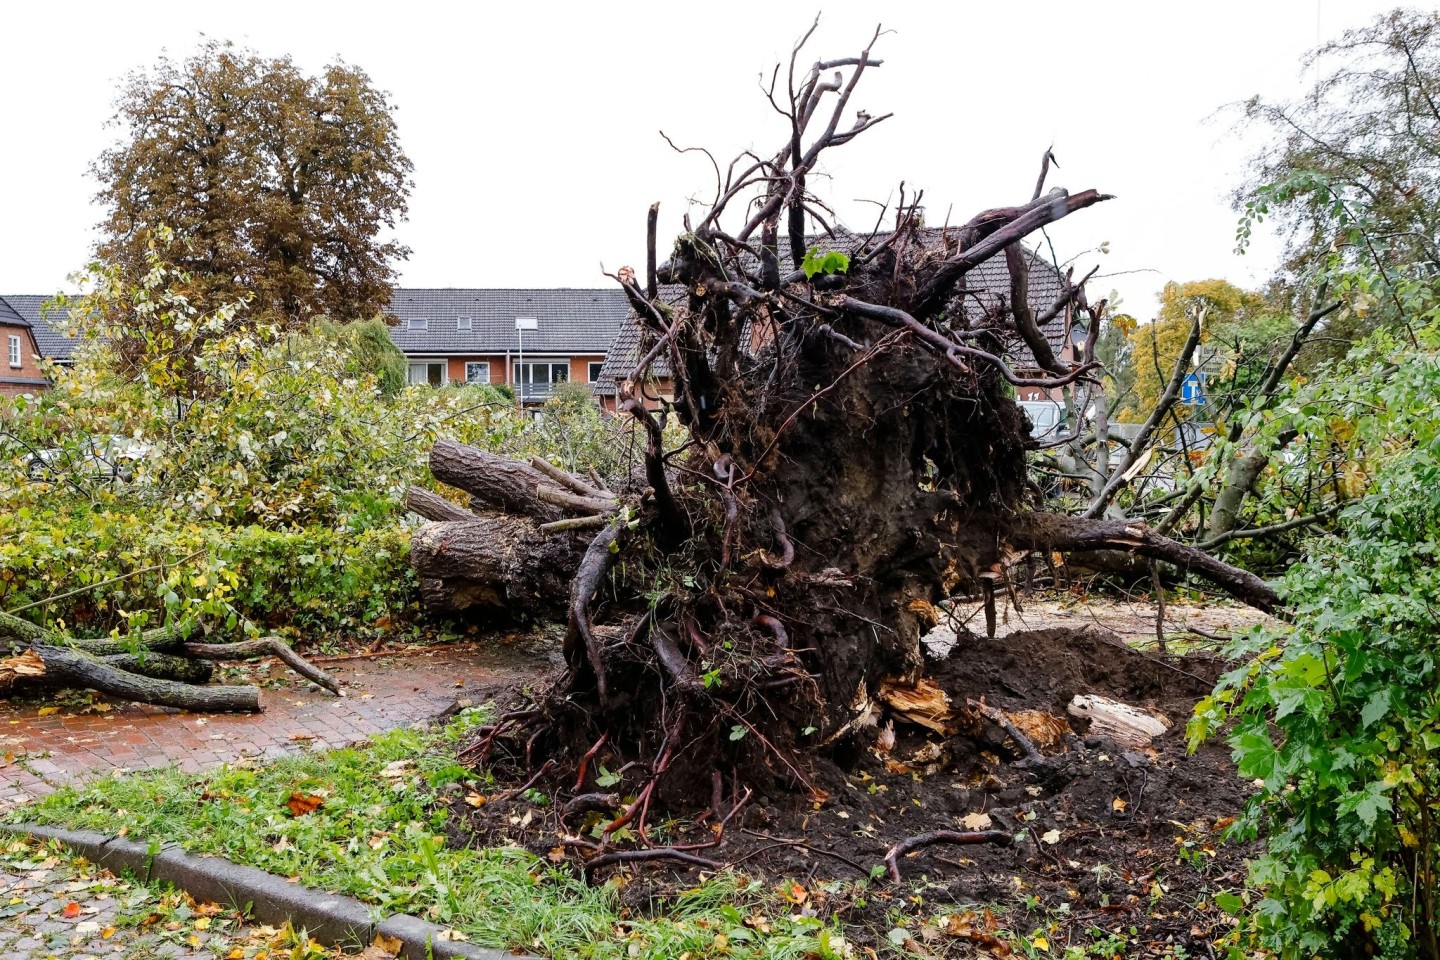 Schäden durch einen Tornado. In Klausdorf, einem Stadtteil von Schwentinental bei Kiel, hat ein Tornado schwere Schäden verursacht.